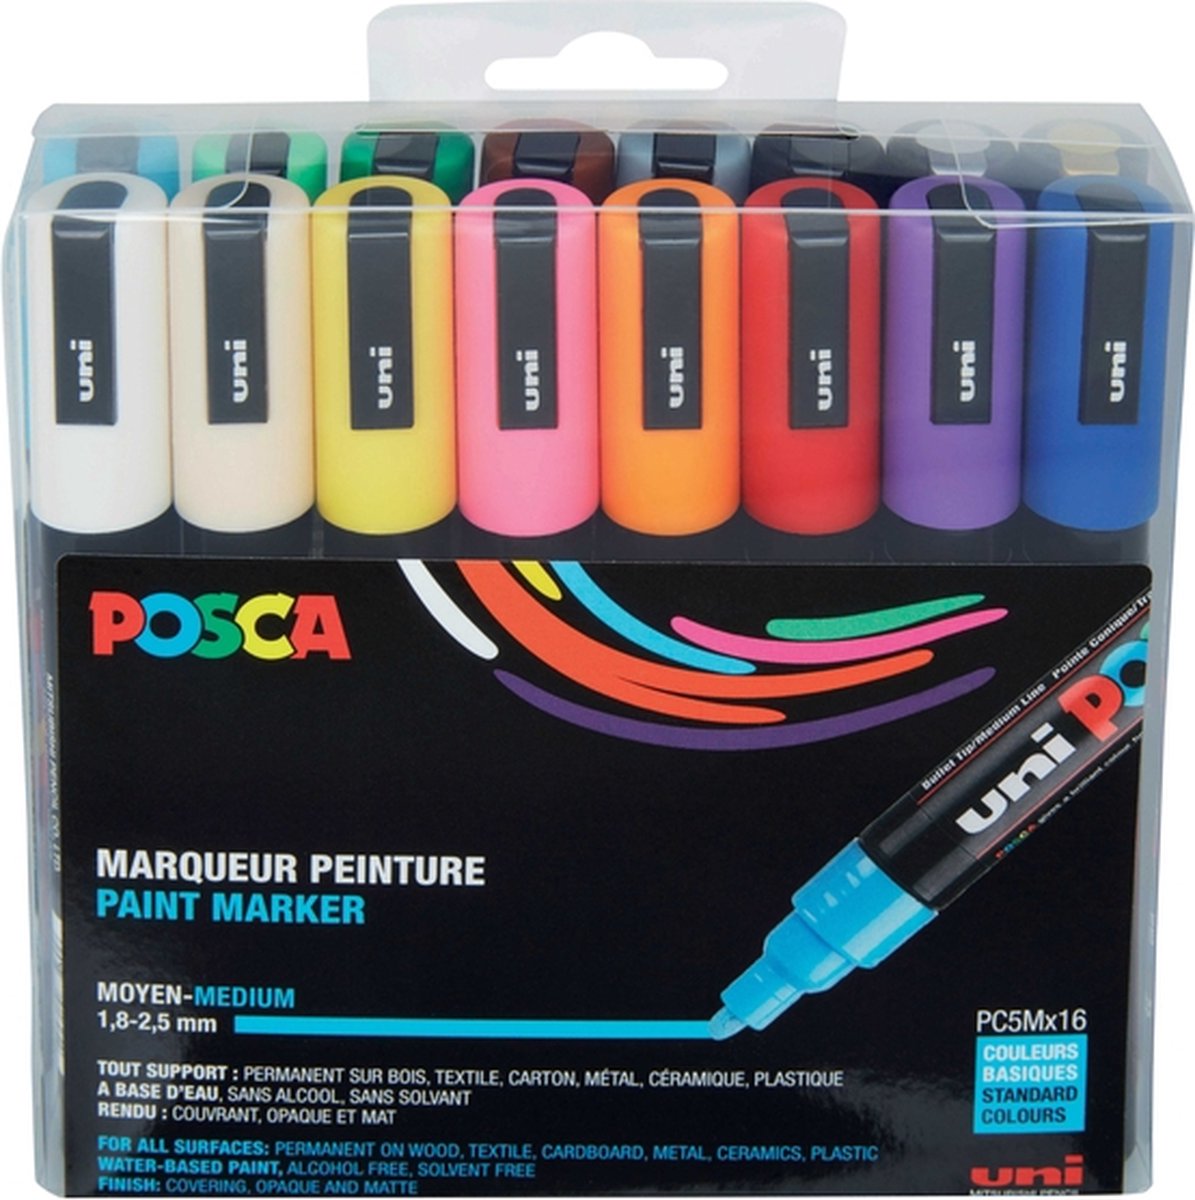 Marqueur de peinture POSCA (1,8-2,5 mm) – Houten Onderwijsmateriaal